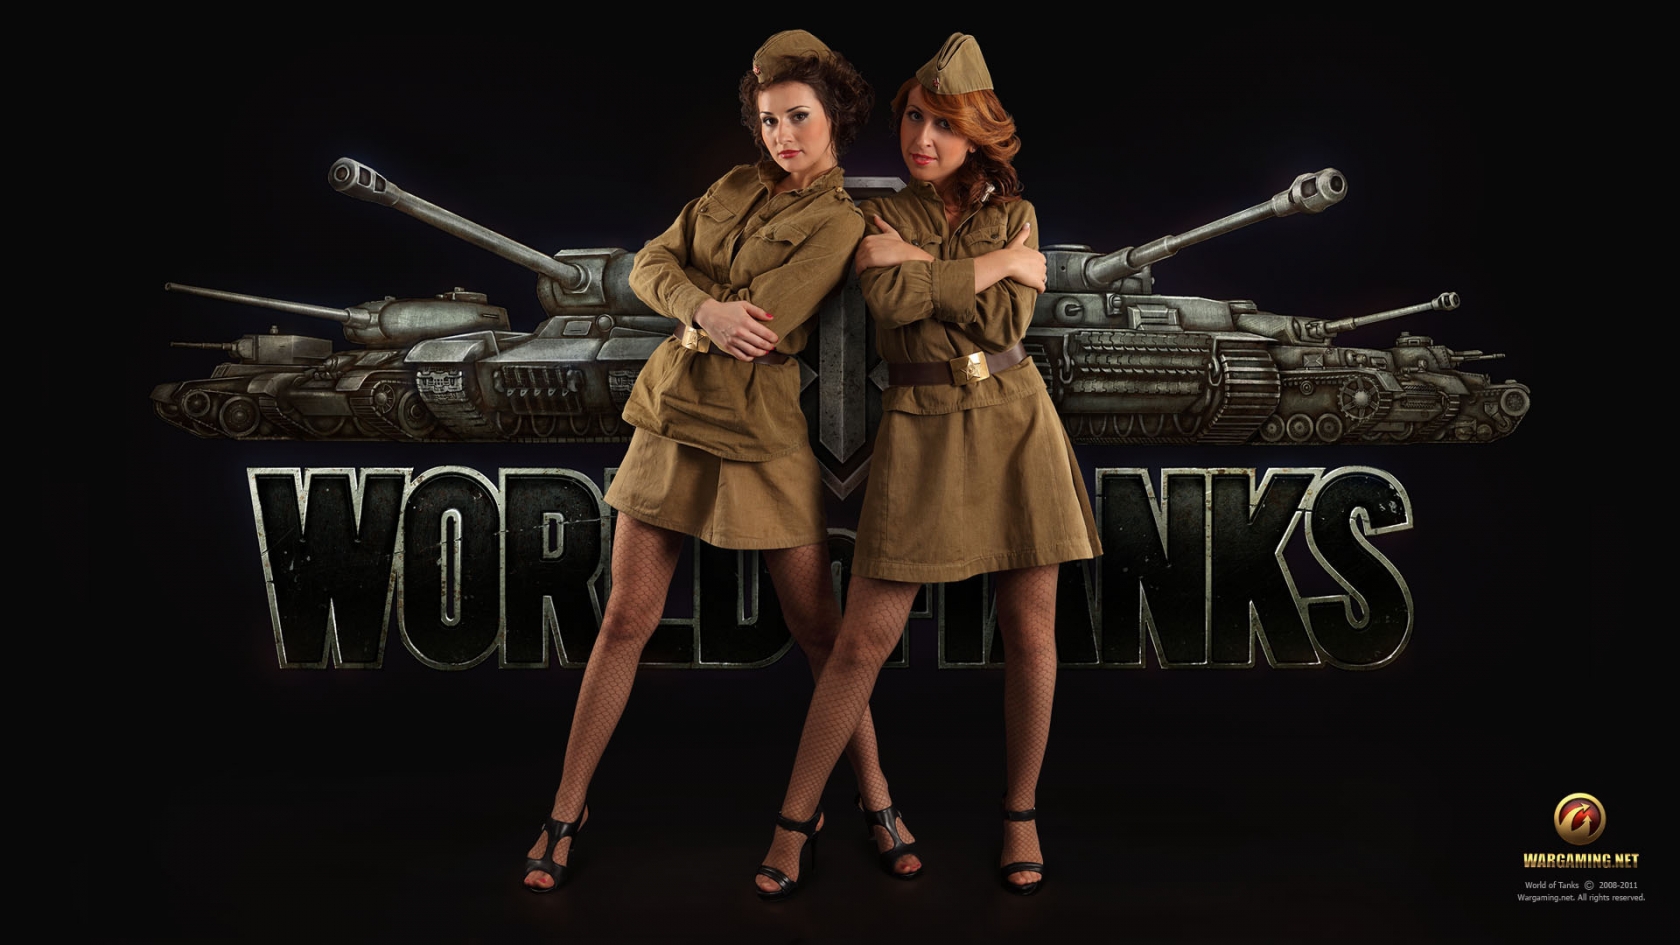 World of Tanks Girls for 1680 x 945 HDTV resolution